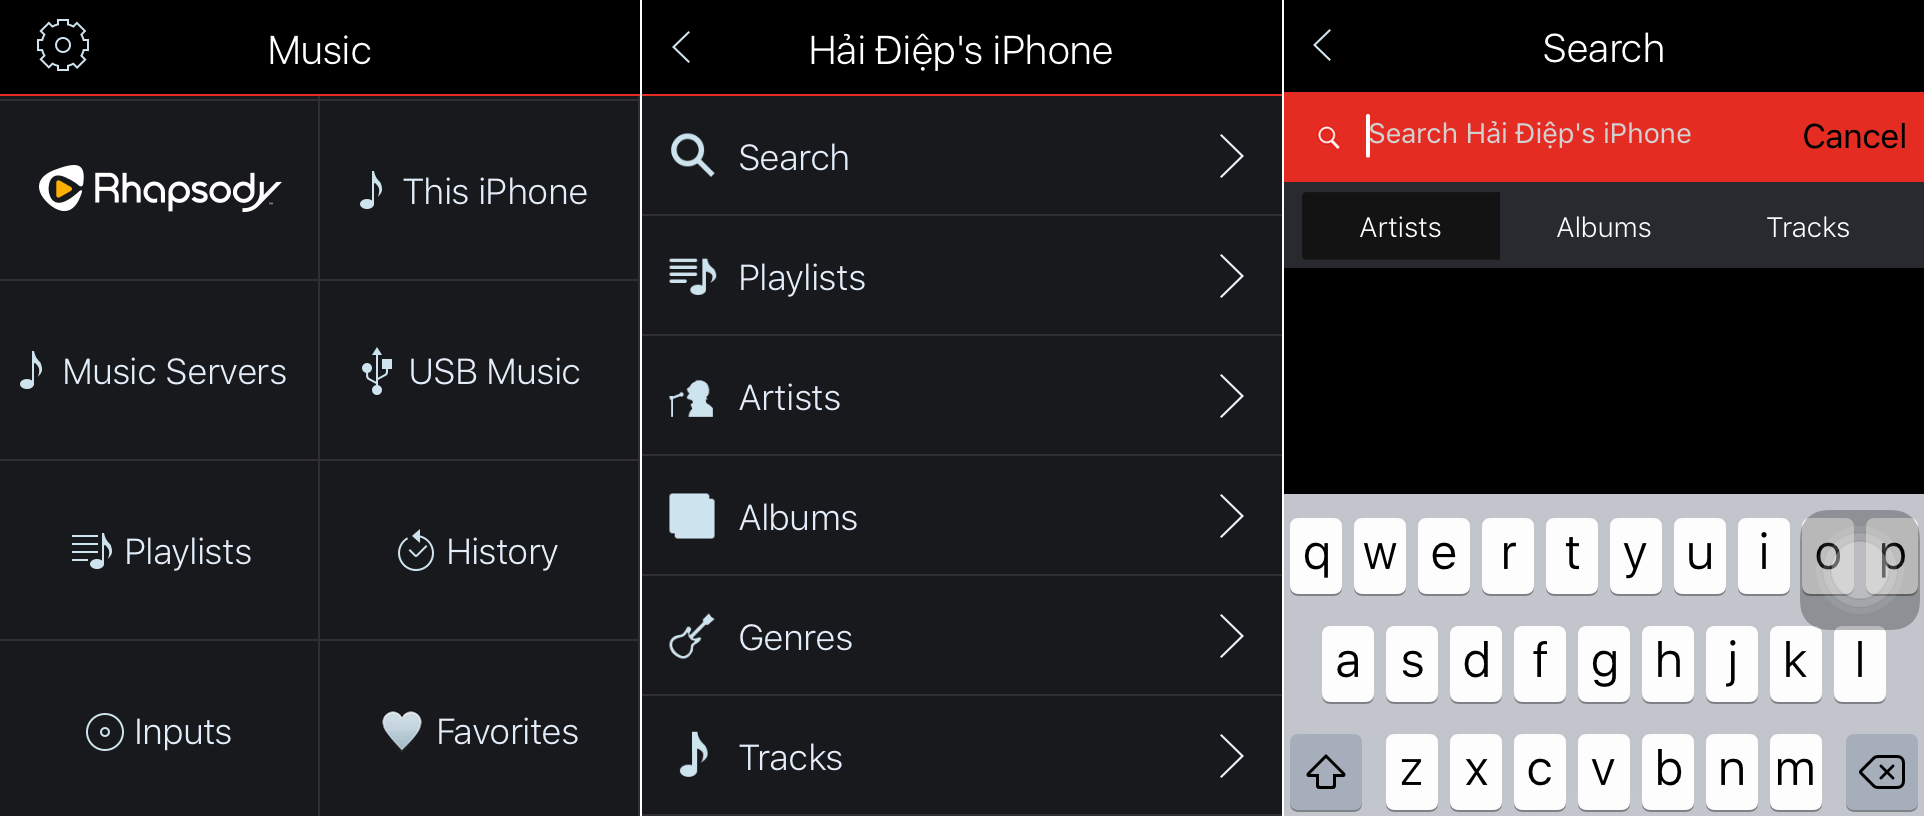 Loa Denon HEOS 7 HS2 | Loa Bluetooth /Wi-Fi / Hi-Res Audio | Anh Duy Audio